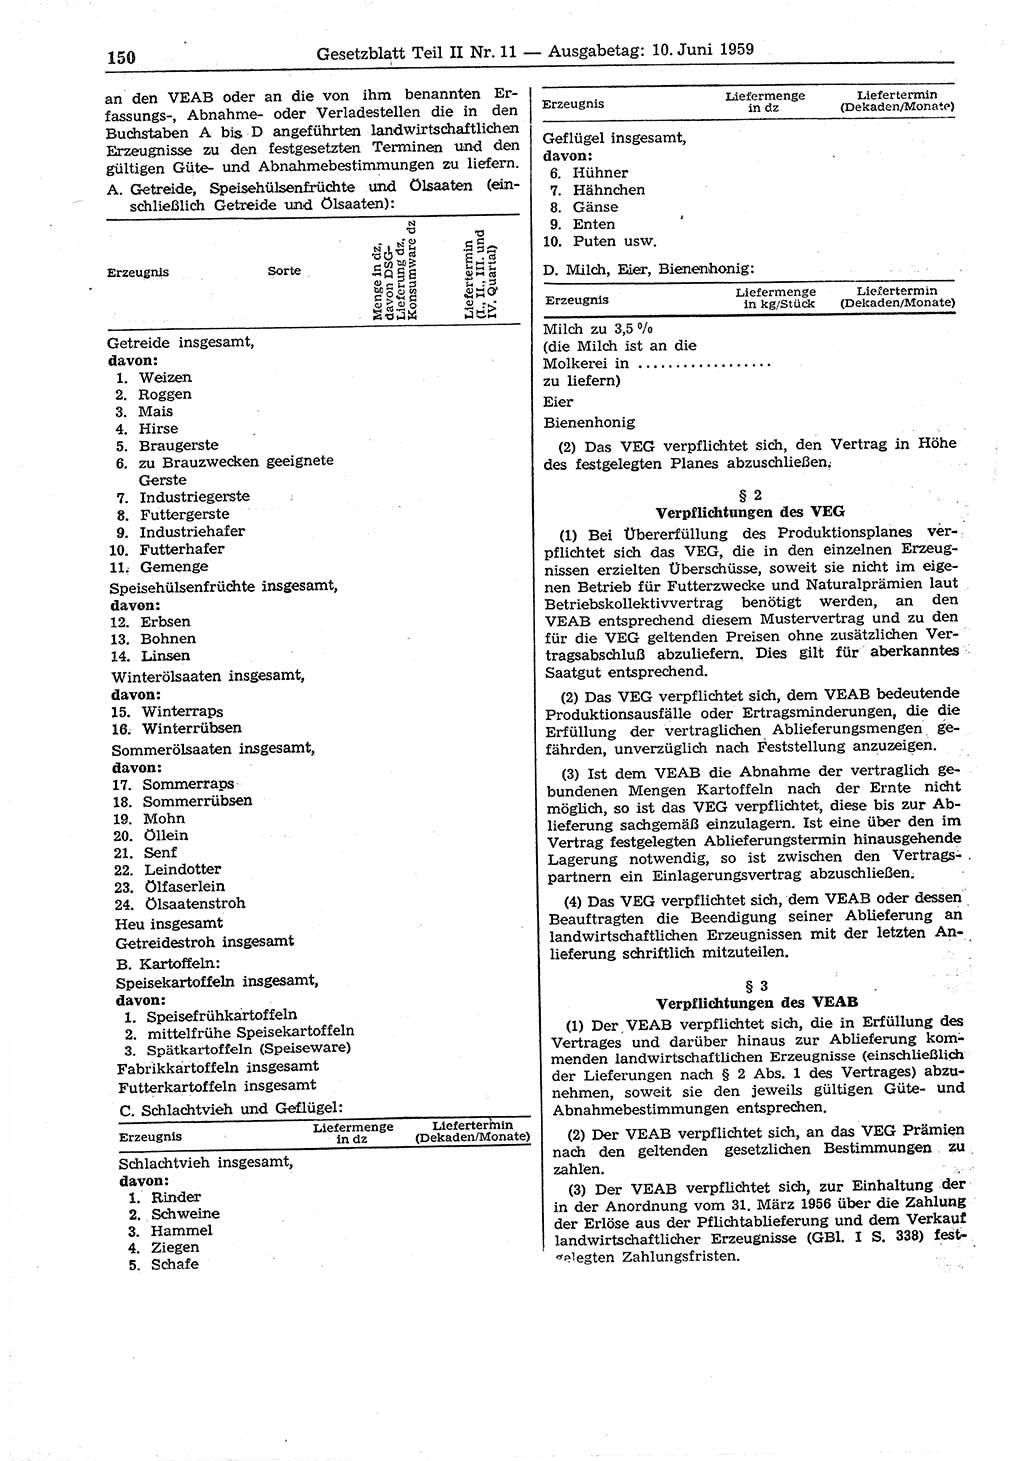 Gesetzblatt (GBl.) der Deutschen Demokratischen Republik (DDR) Teil ⅠⅠ 1959, Seite 150 (GBl. DDR ⅠⅠ 1959, S. 150)